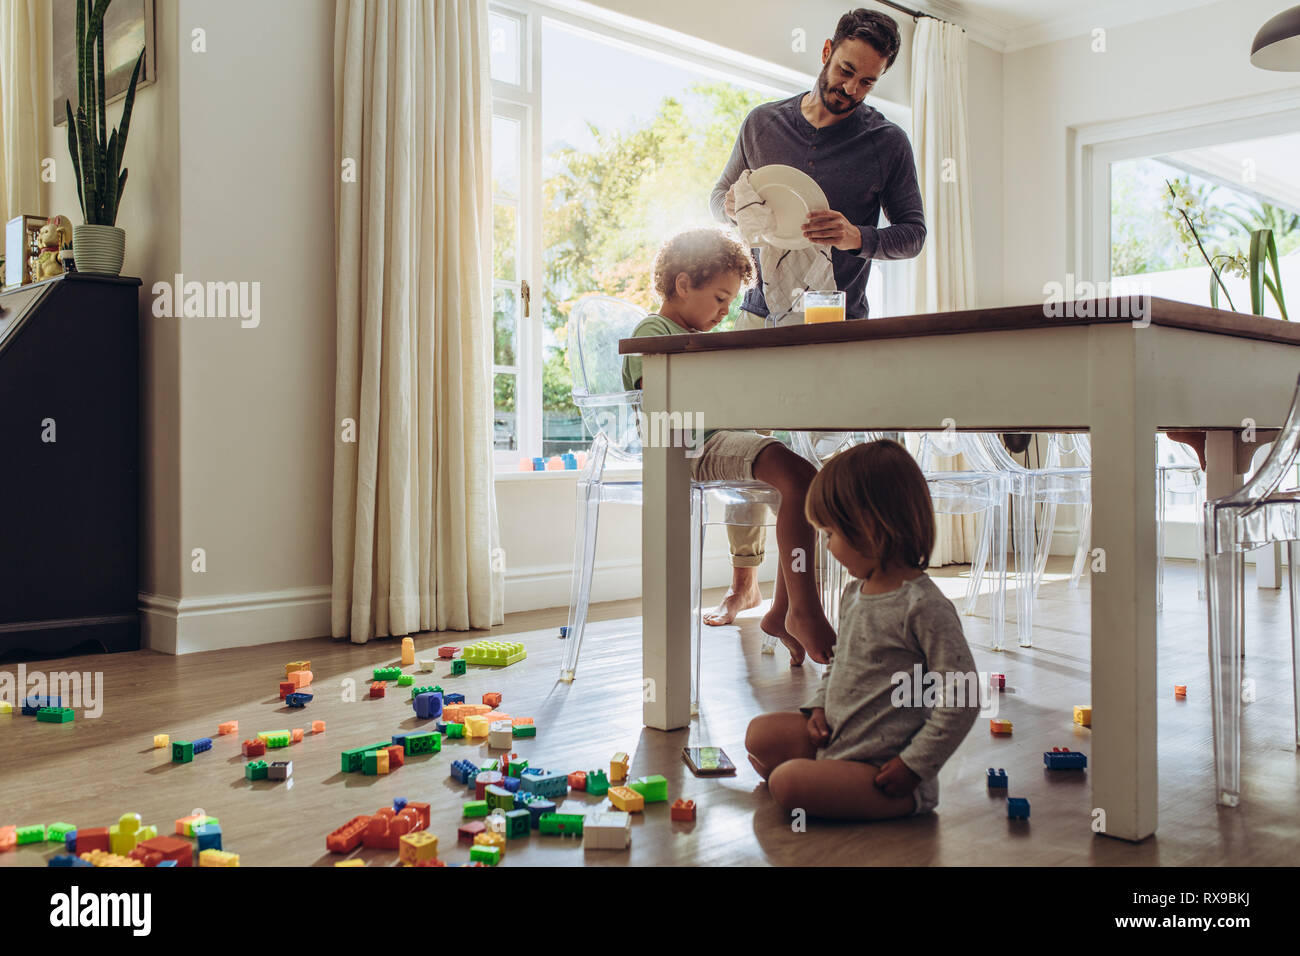 Uomo che guarda dopo i suoi bambini mentre si fanno i lavori domestici. Kid giocare con giocattoli seduto sul pavimento con il suo padre facendo quotidianamente domestiche. Foto Stock